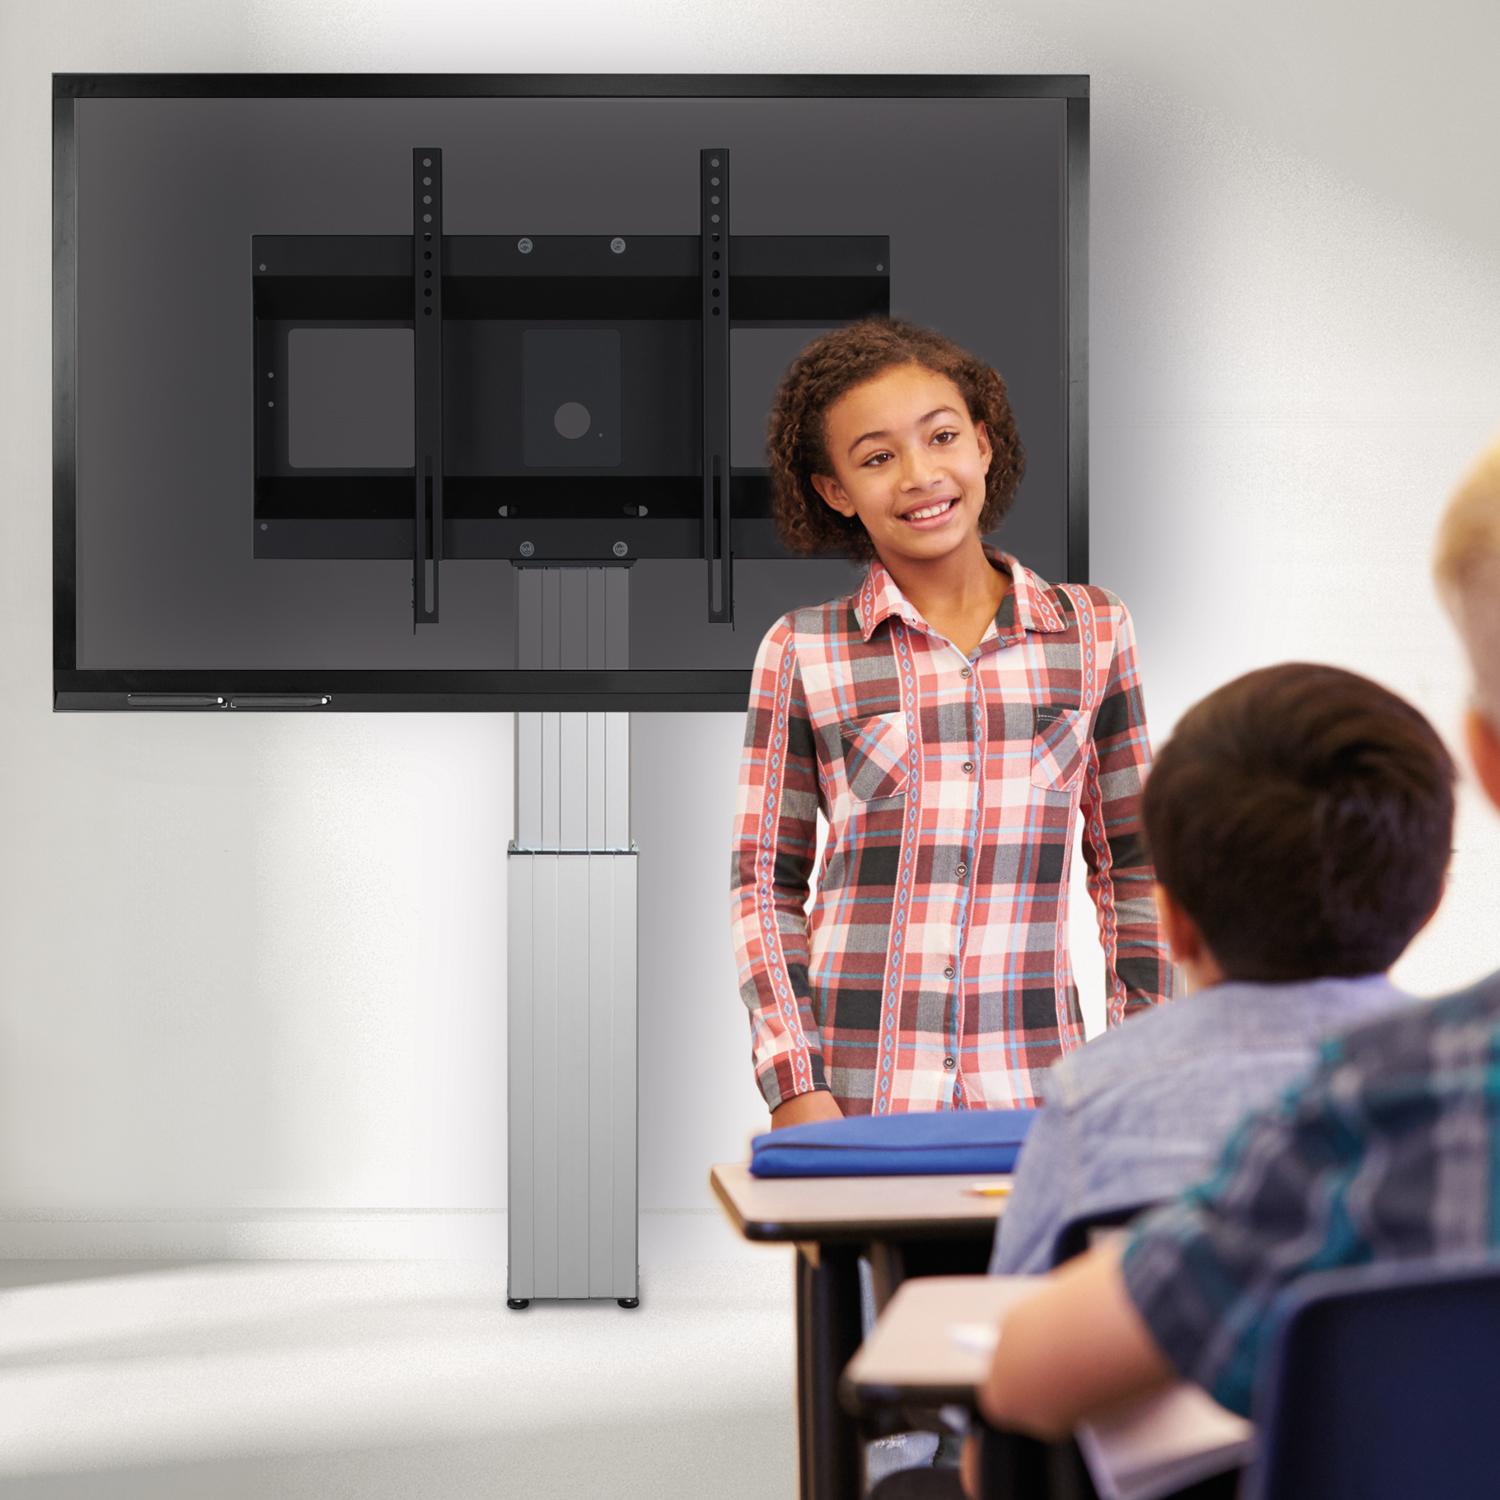 Elektrisch hoogte verstelbaar TV standaard 95-145 cm voor 42 tot 100 inch schermen voor wandmontage